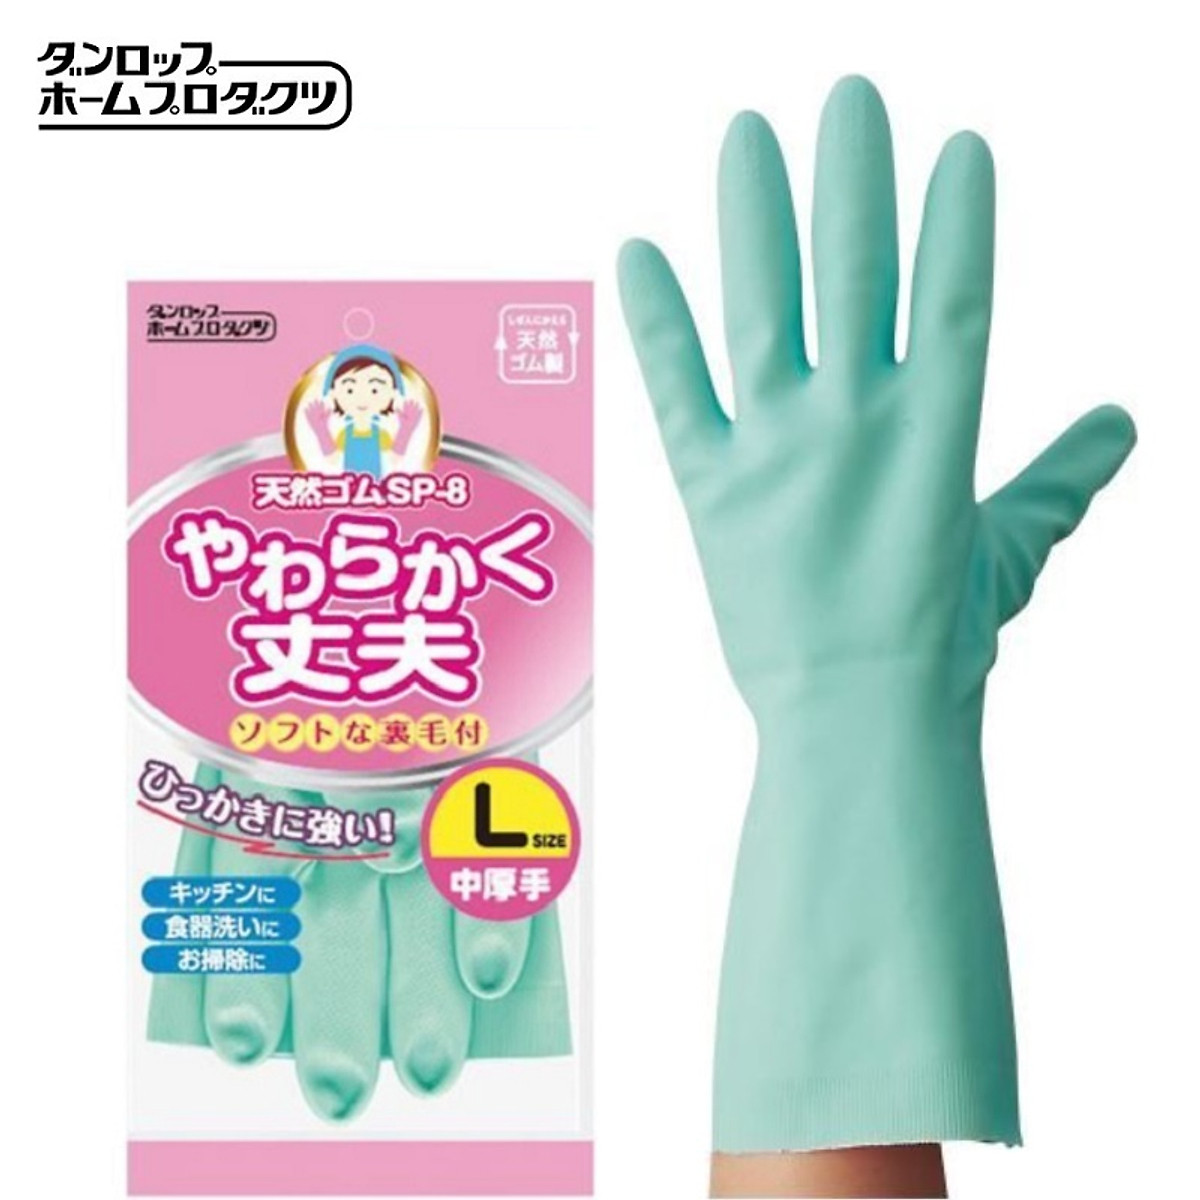 Set găng tay cao su nhà bếp siêu mềm hàng nội địa Nhật Bản